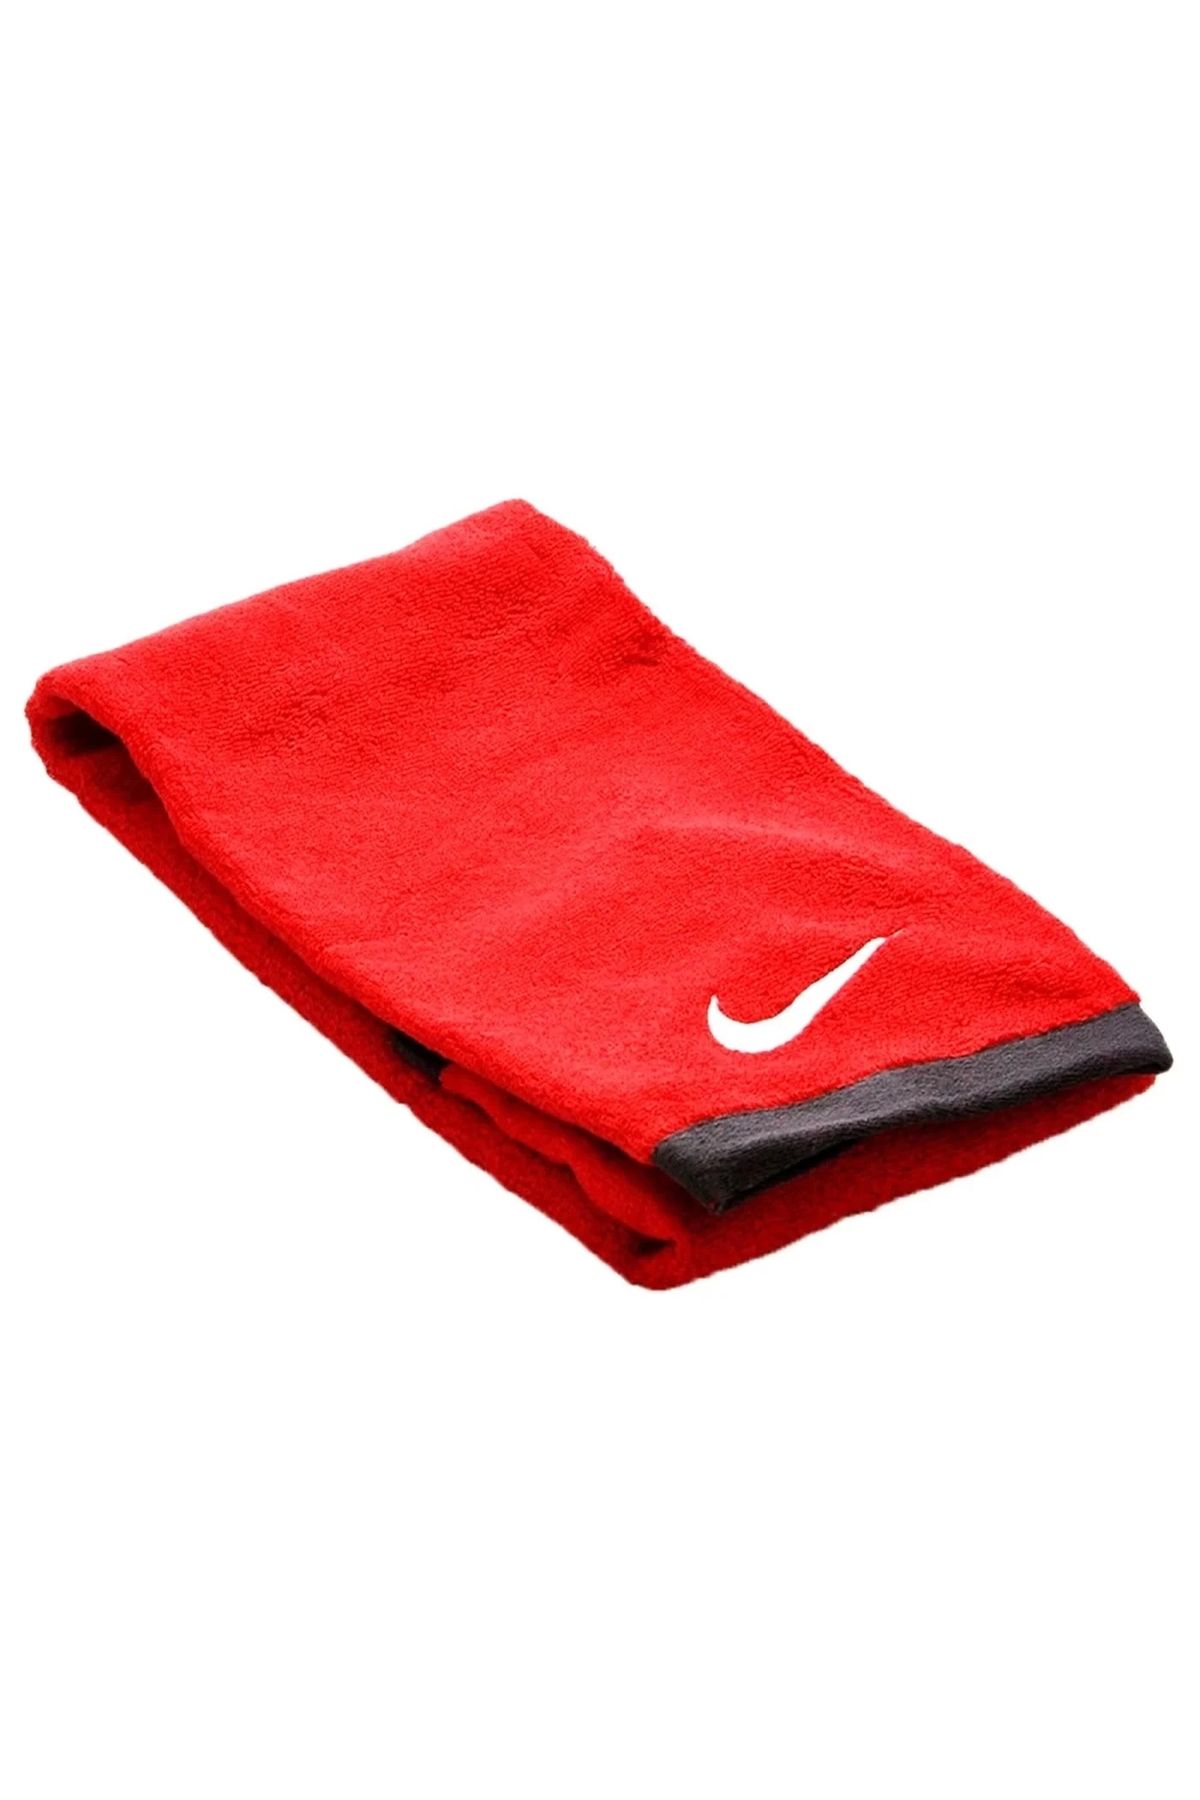 Nike Fundamental Towel Unisex Kırmızı Antrenman Havlu N.ET.17.643.MD